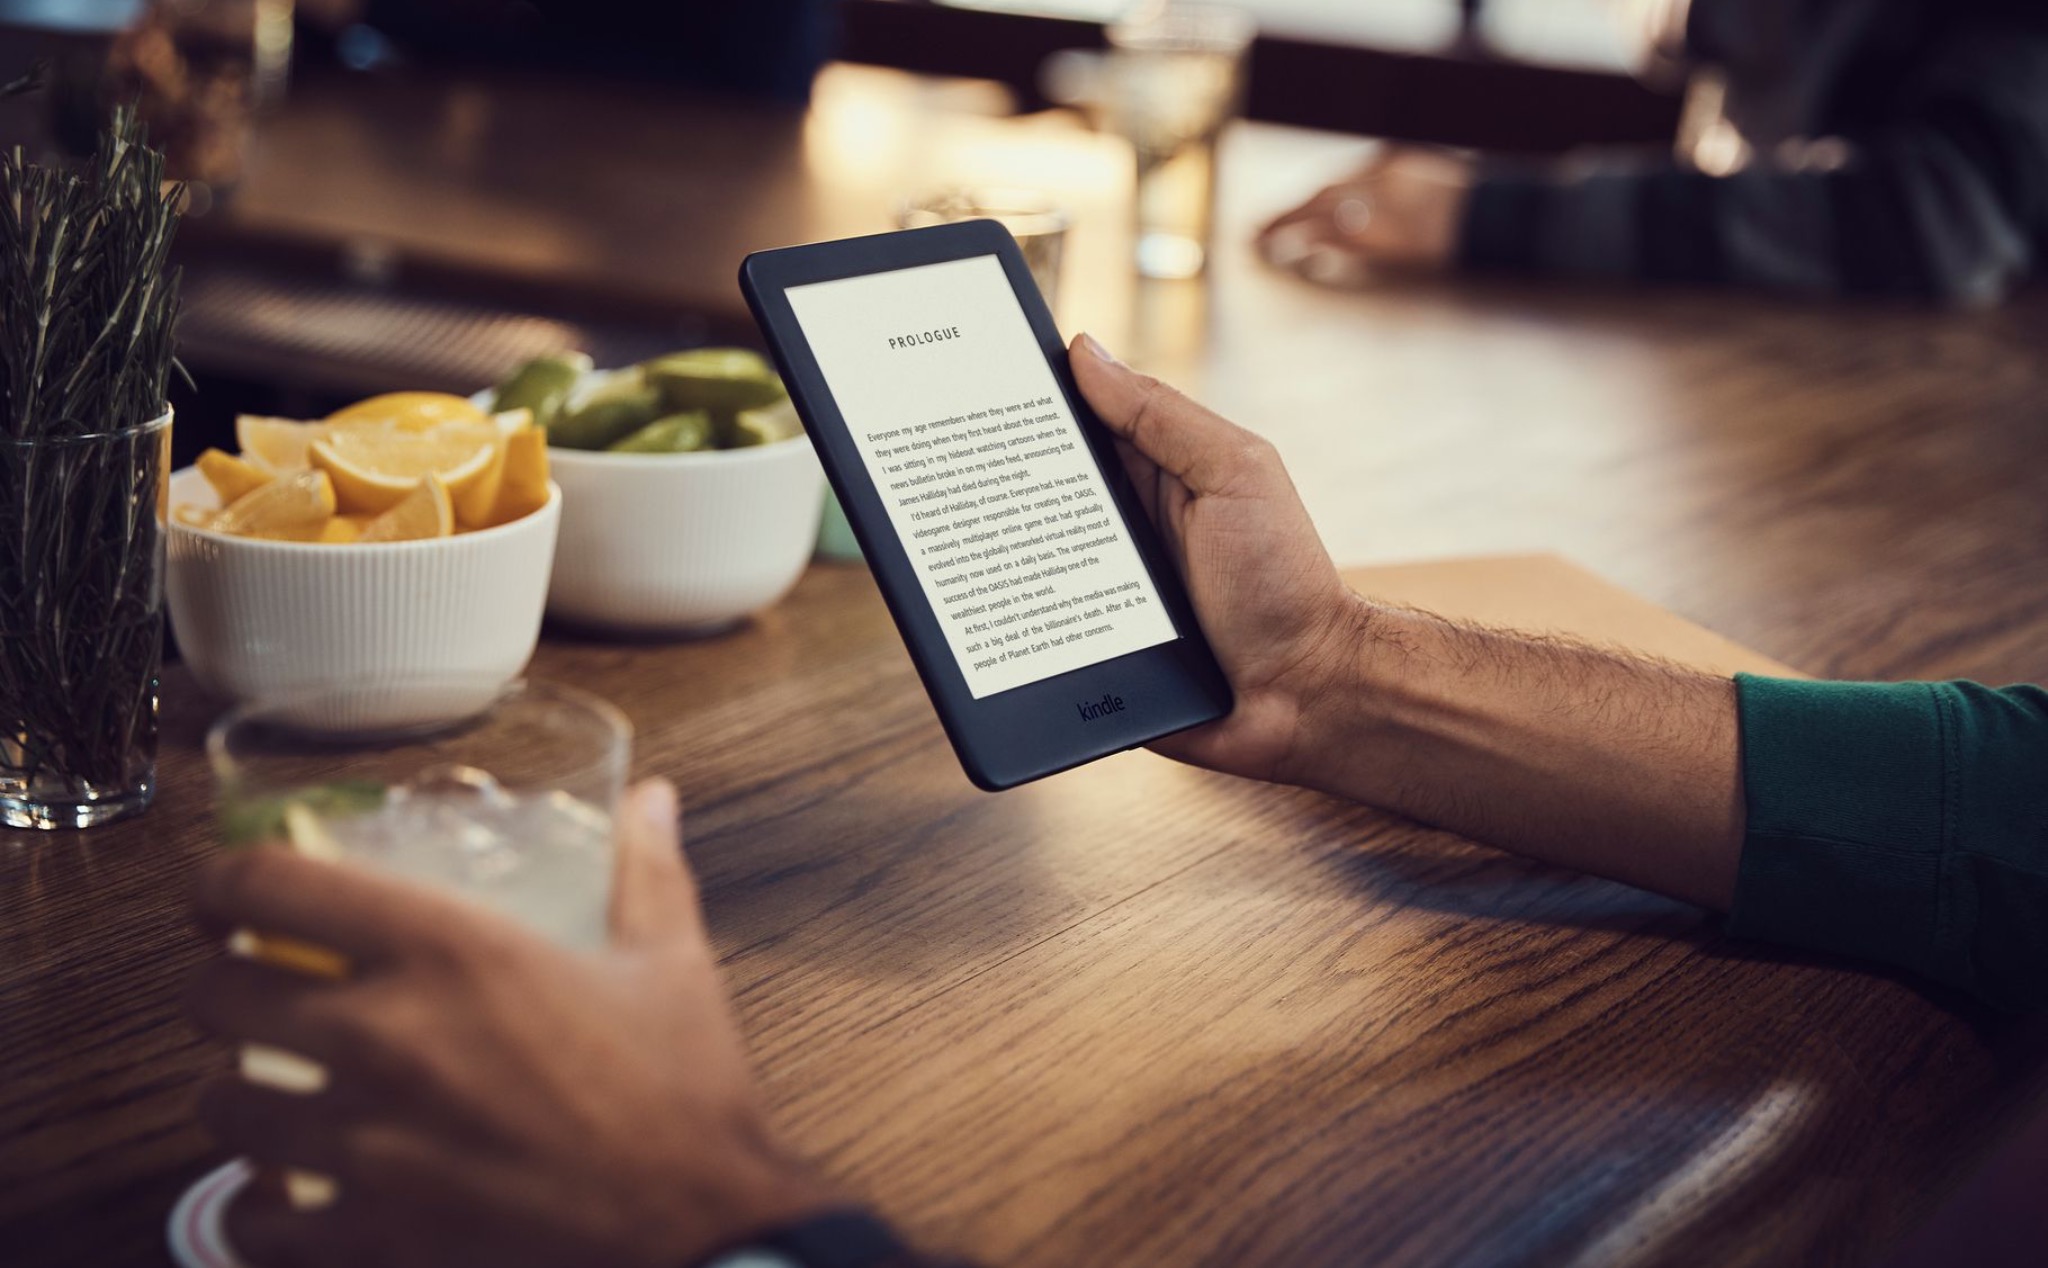 Amazon nâng cấp Kindle với đèn nền, giá tăng lên thành 90 USD